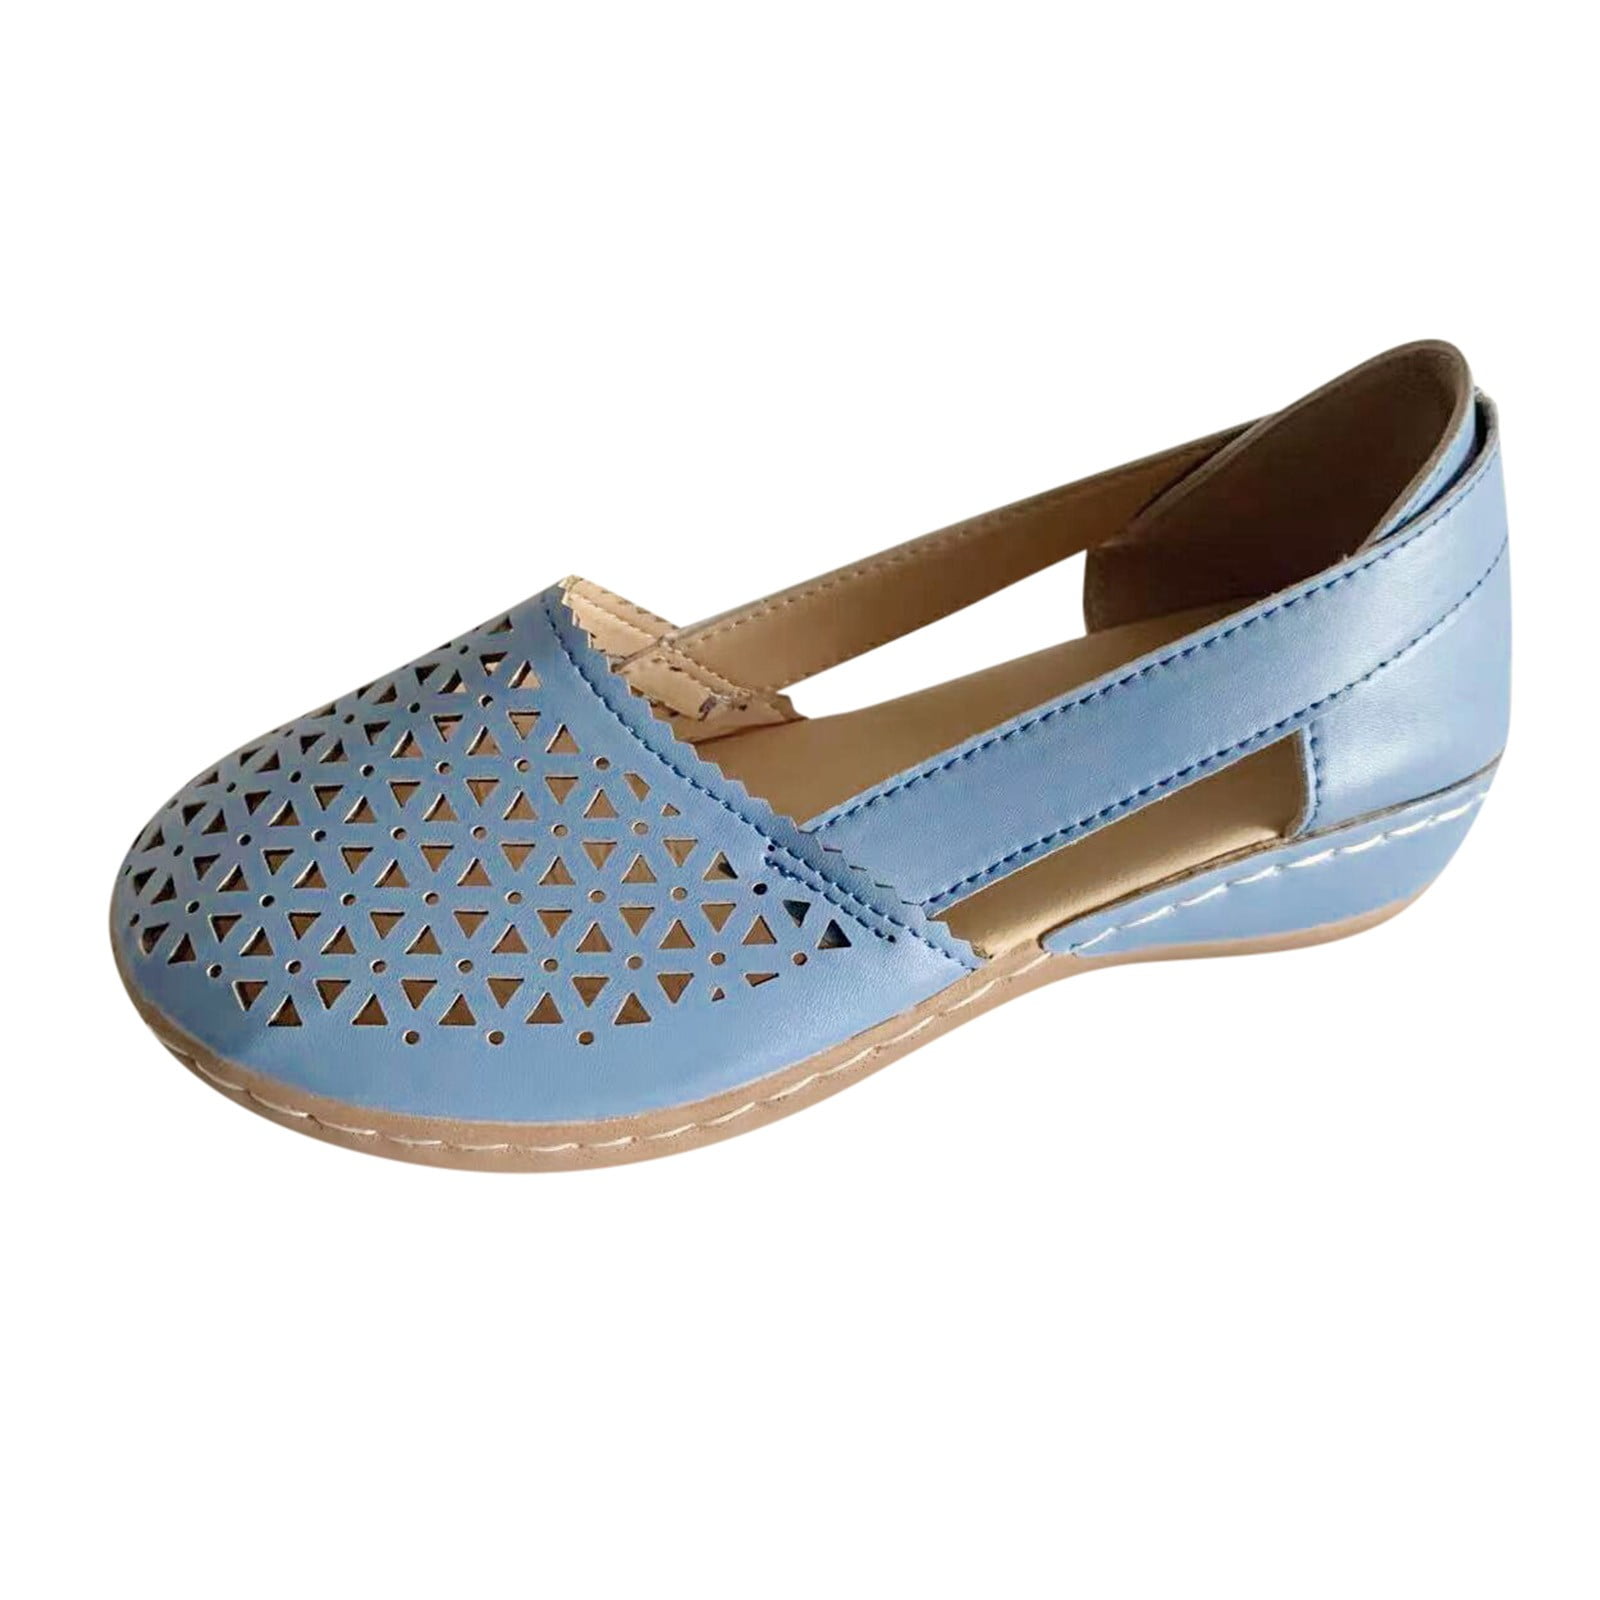 Buy Blue Velvet Heels, Teal Blue Velvet Shoes, Wedding Shoes, Blue Wedding  Shoes, Blue Block Heels, Blue Velvet Wedding Shoes, Something Blue Online  in India - Etsy